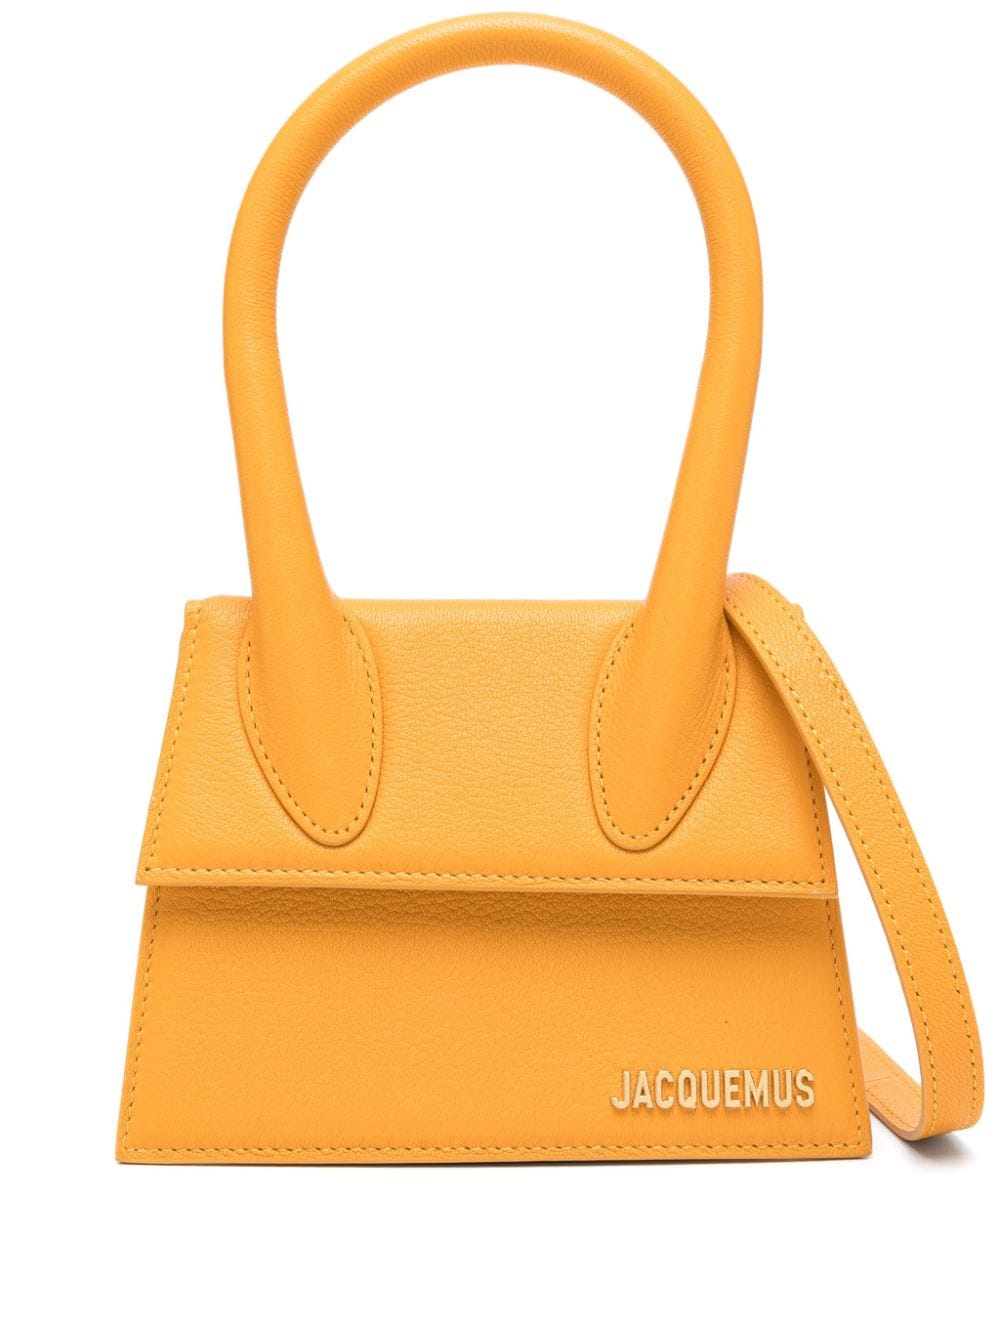 ダークオレンジ色の女性用ペブルレザーハンドバッグ